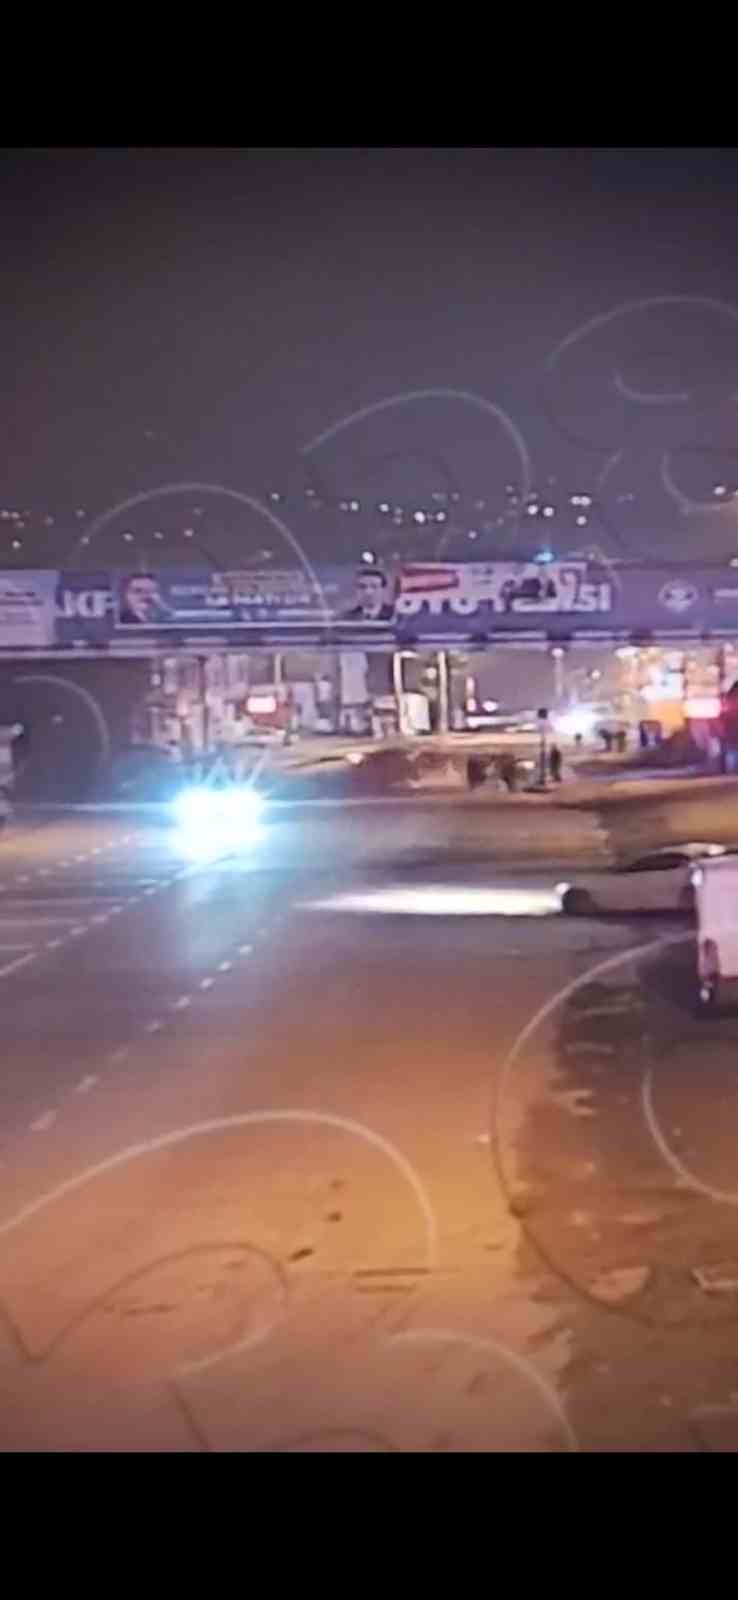 Trabzon’da 1 kişinin öldüğü, 5 kişinin yaralandığı kaza güvenlik kamerasında
